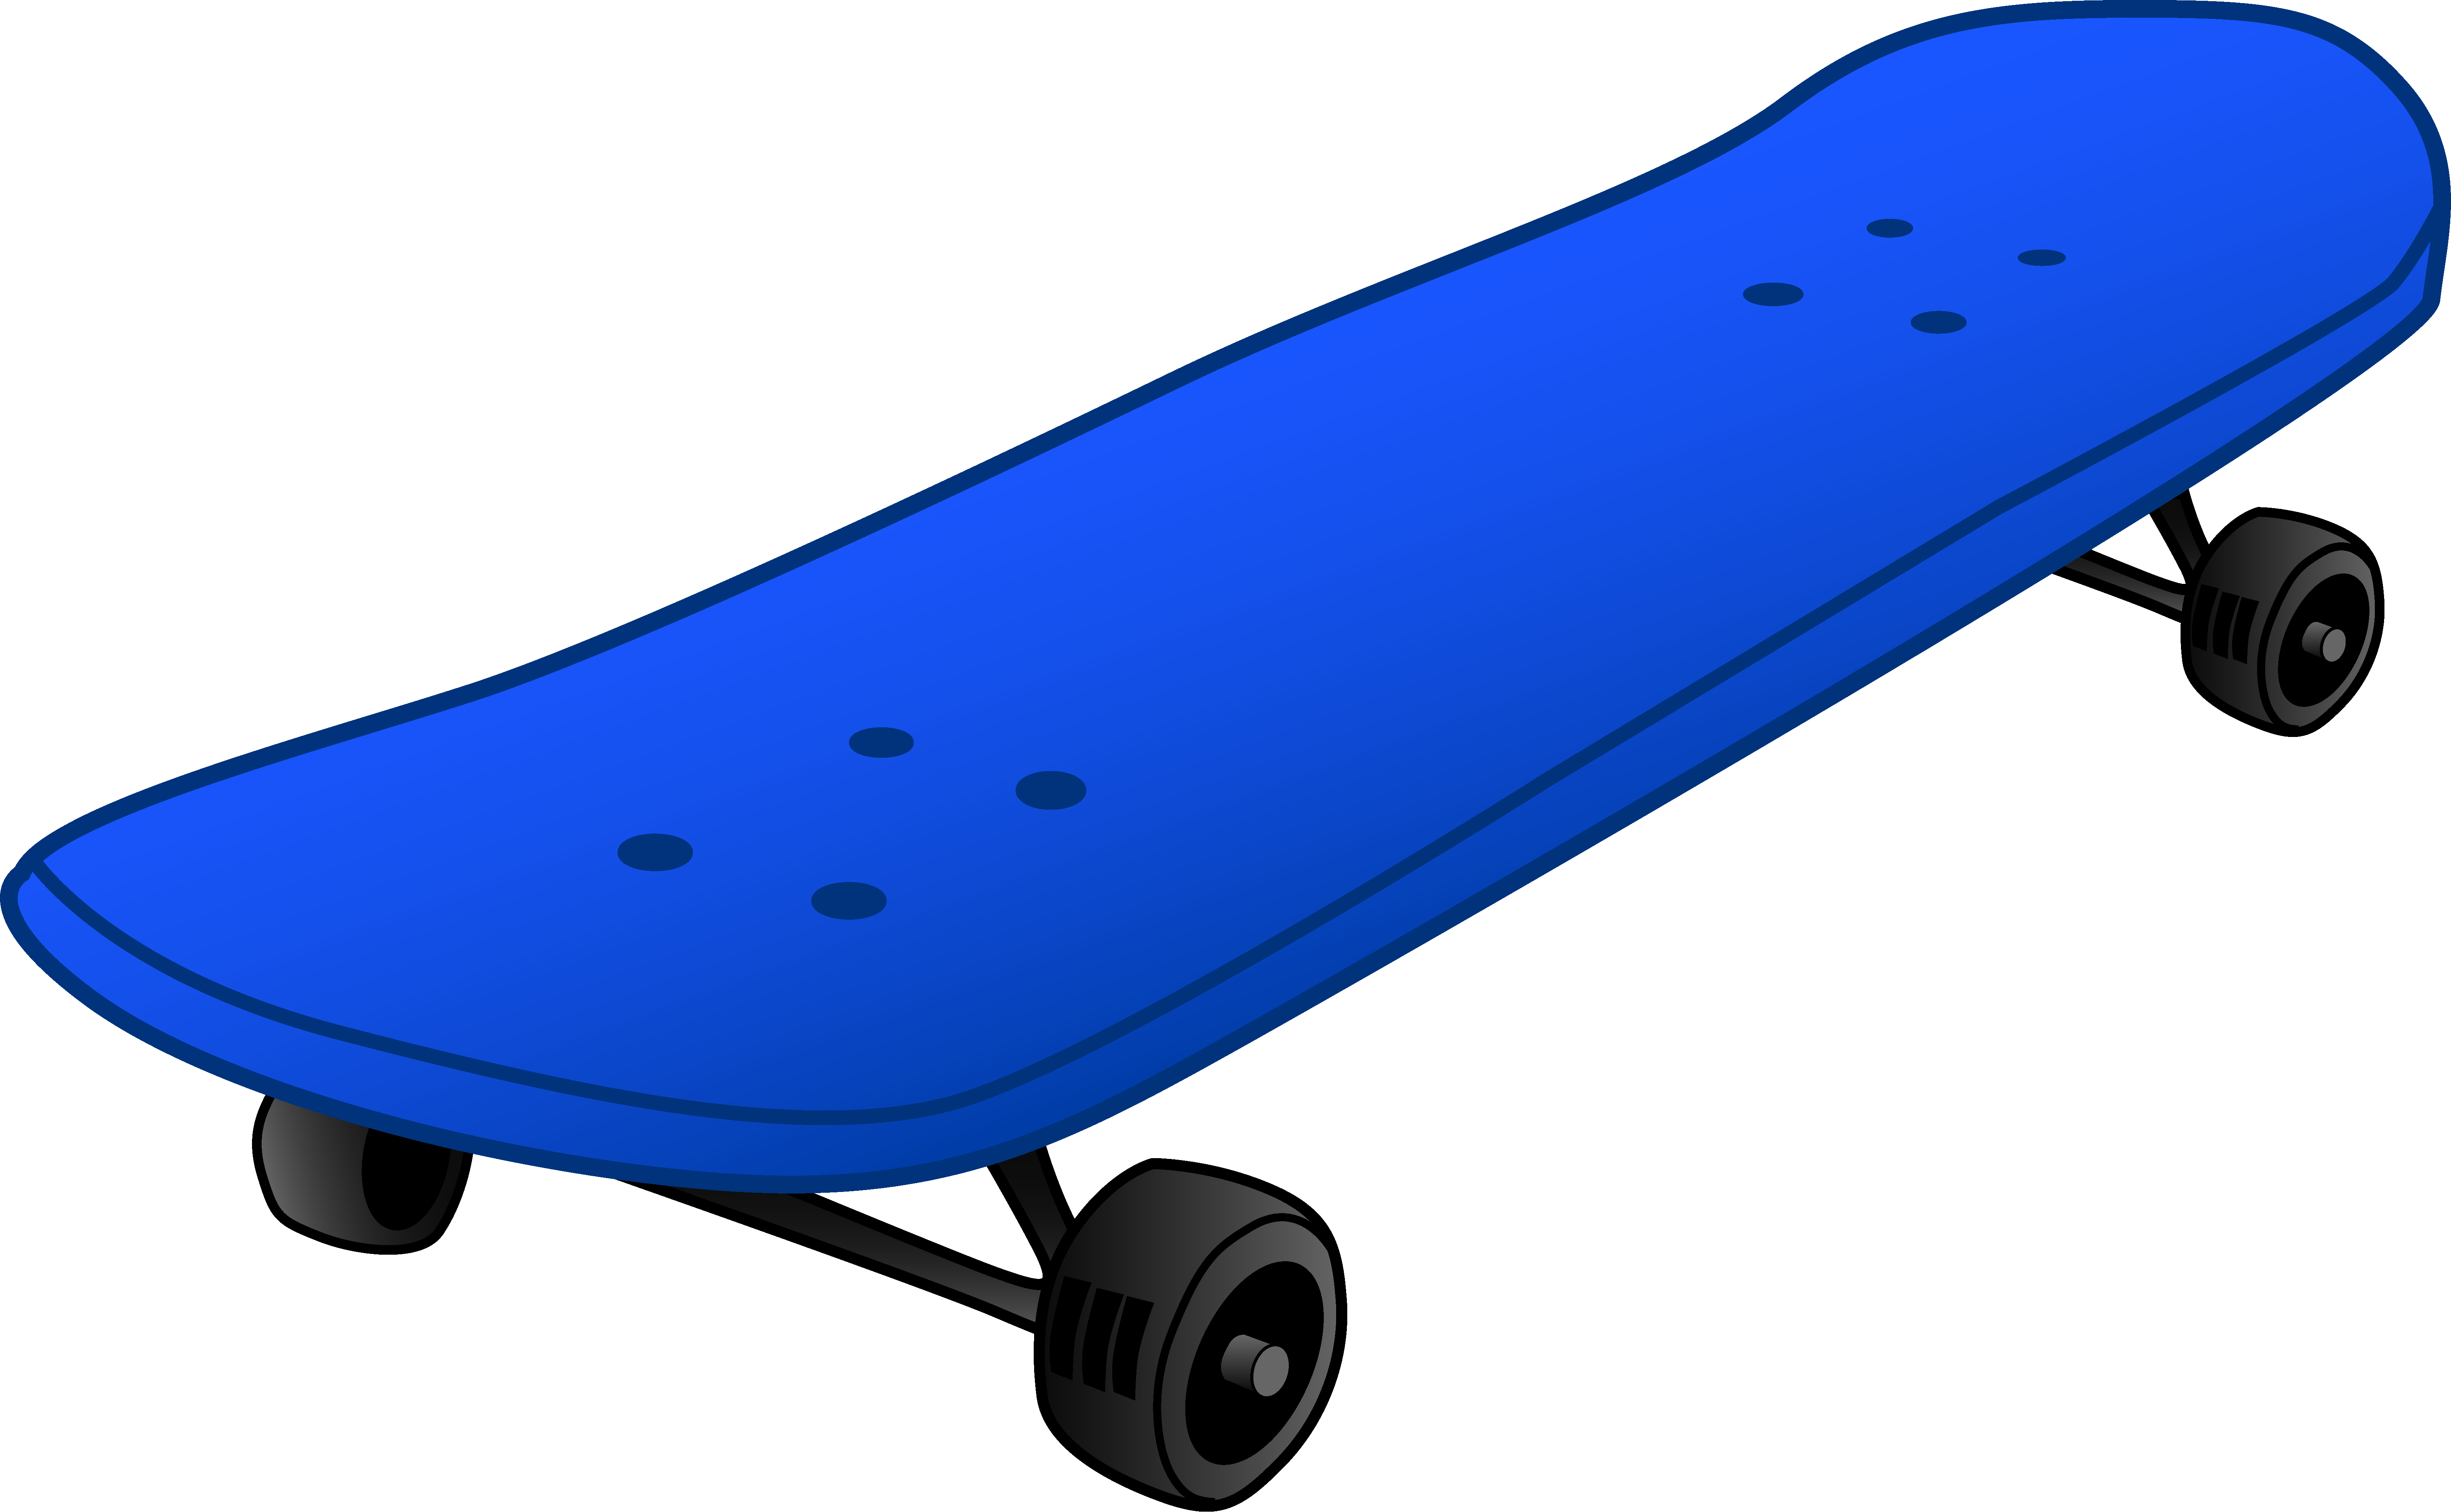 skateboard clipart - Skateboard Clip Art